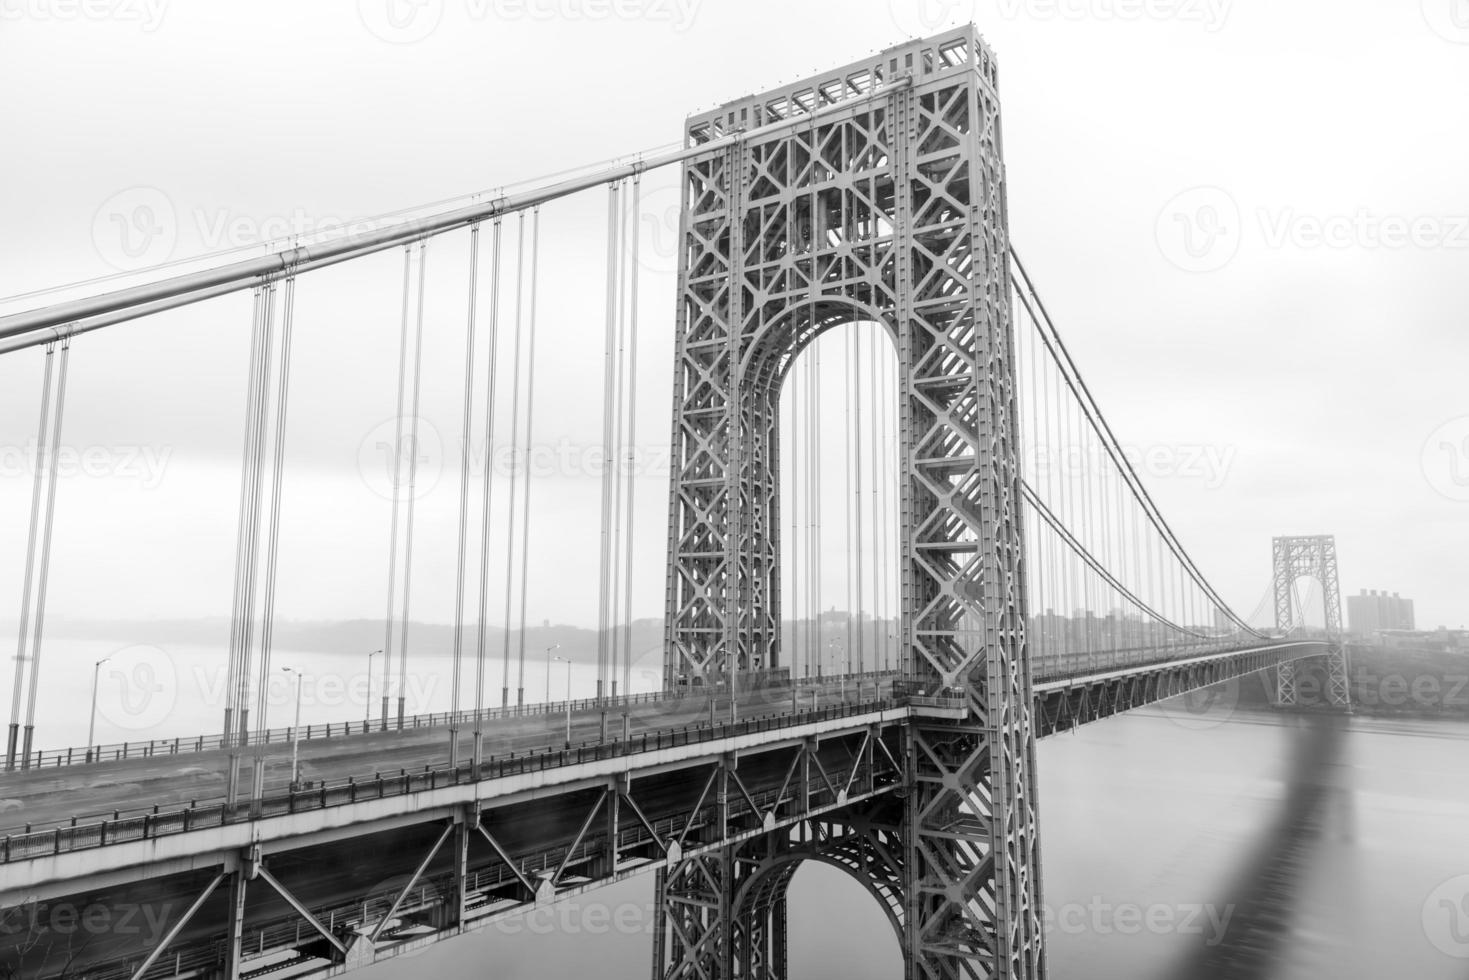 George Washington Bridge über den Hudson River an einem bewölkten bewölkten Tag von Fort Lee, New Jersey. foto